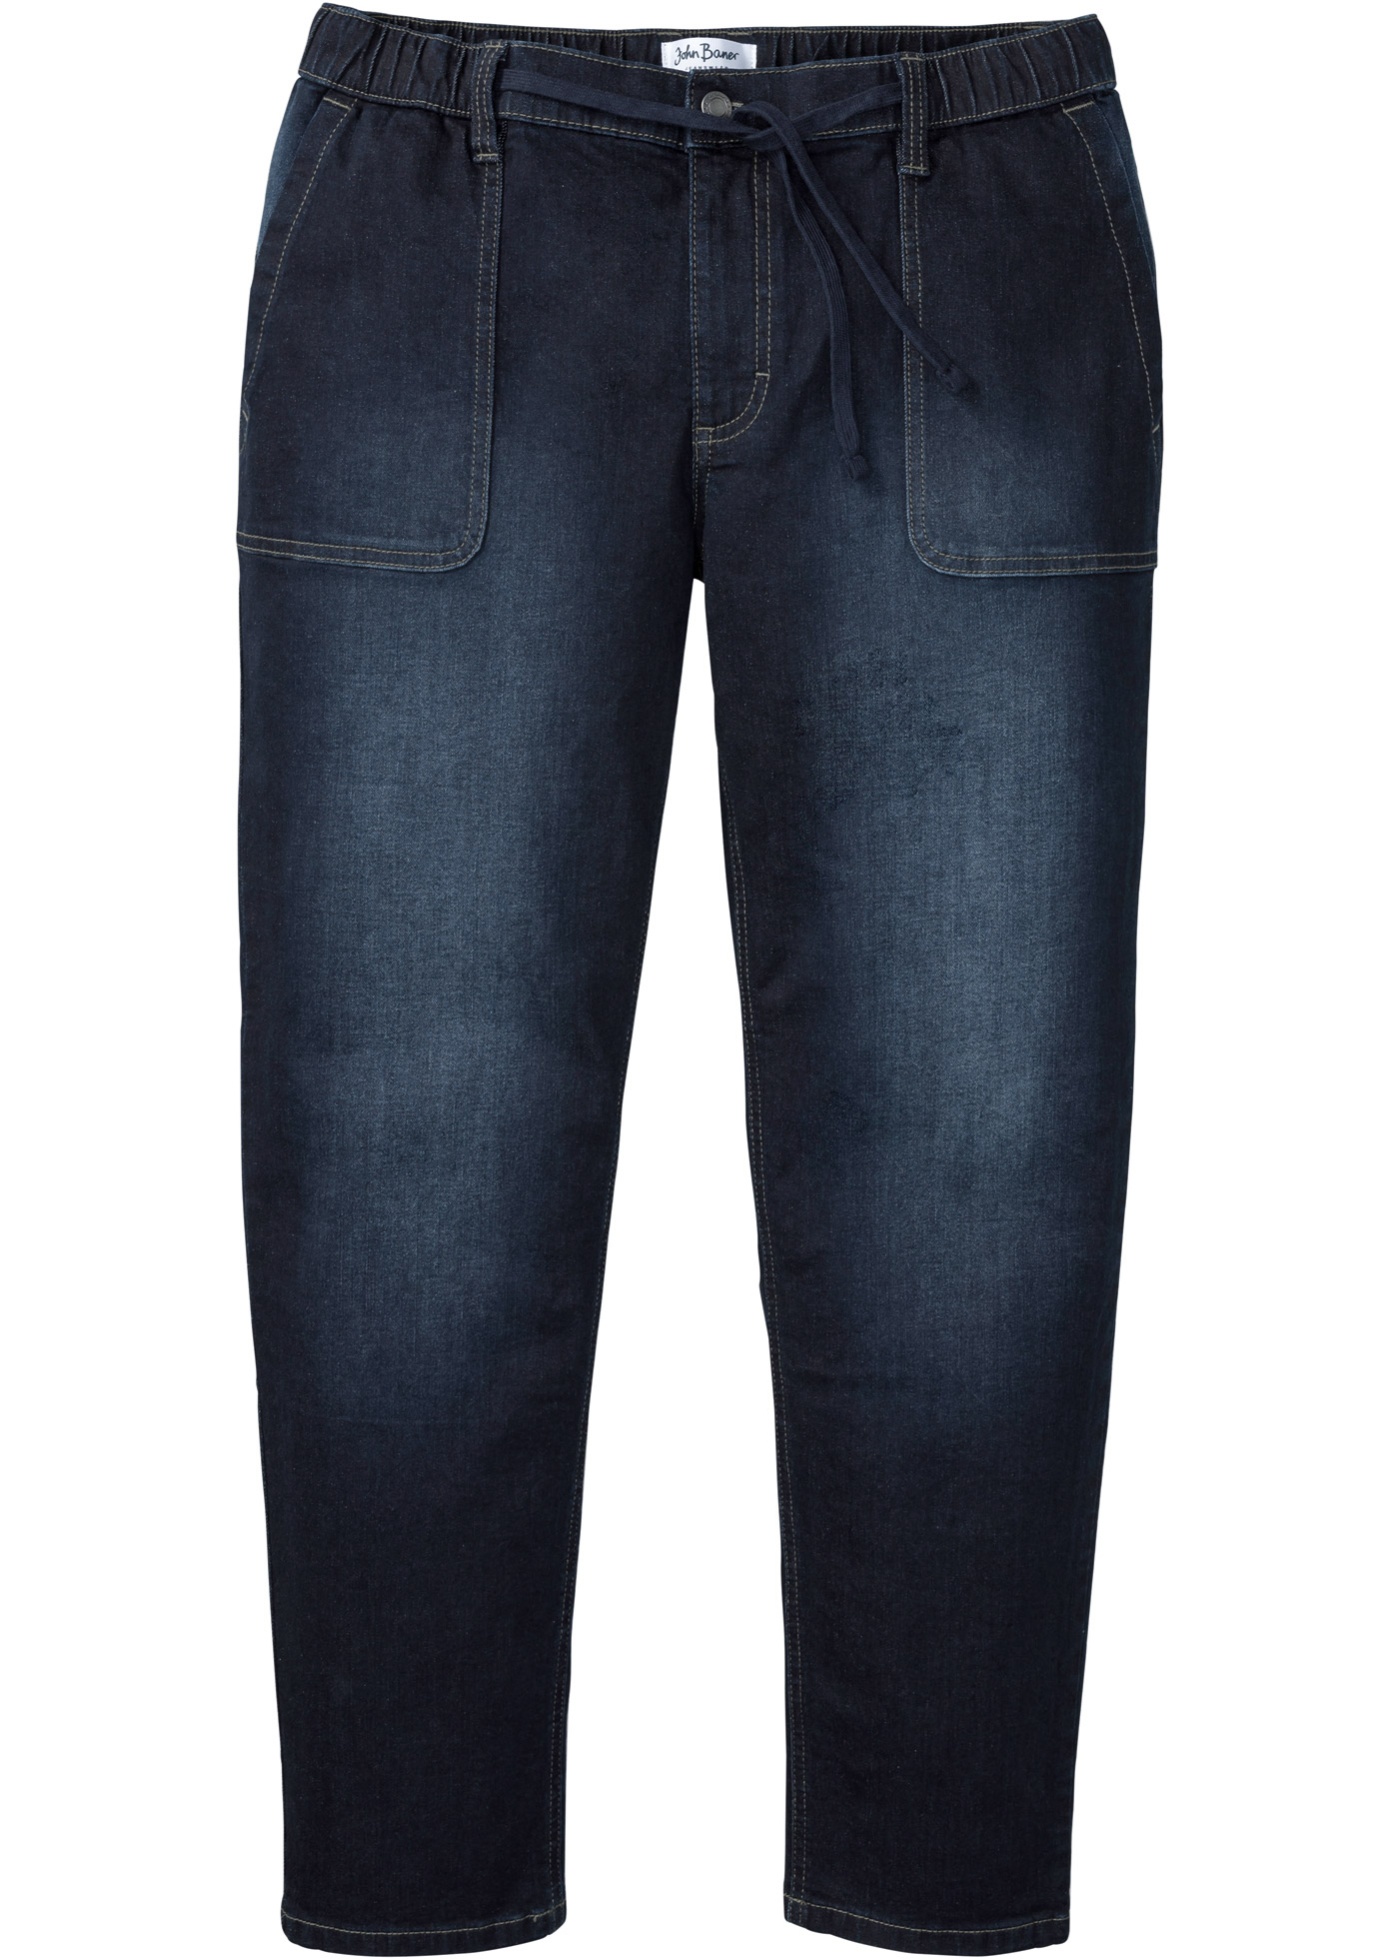 Strečové džínsy s komfortným strihom, Loose Fit